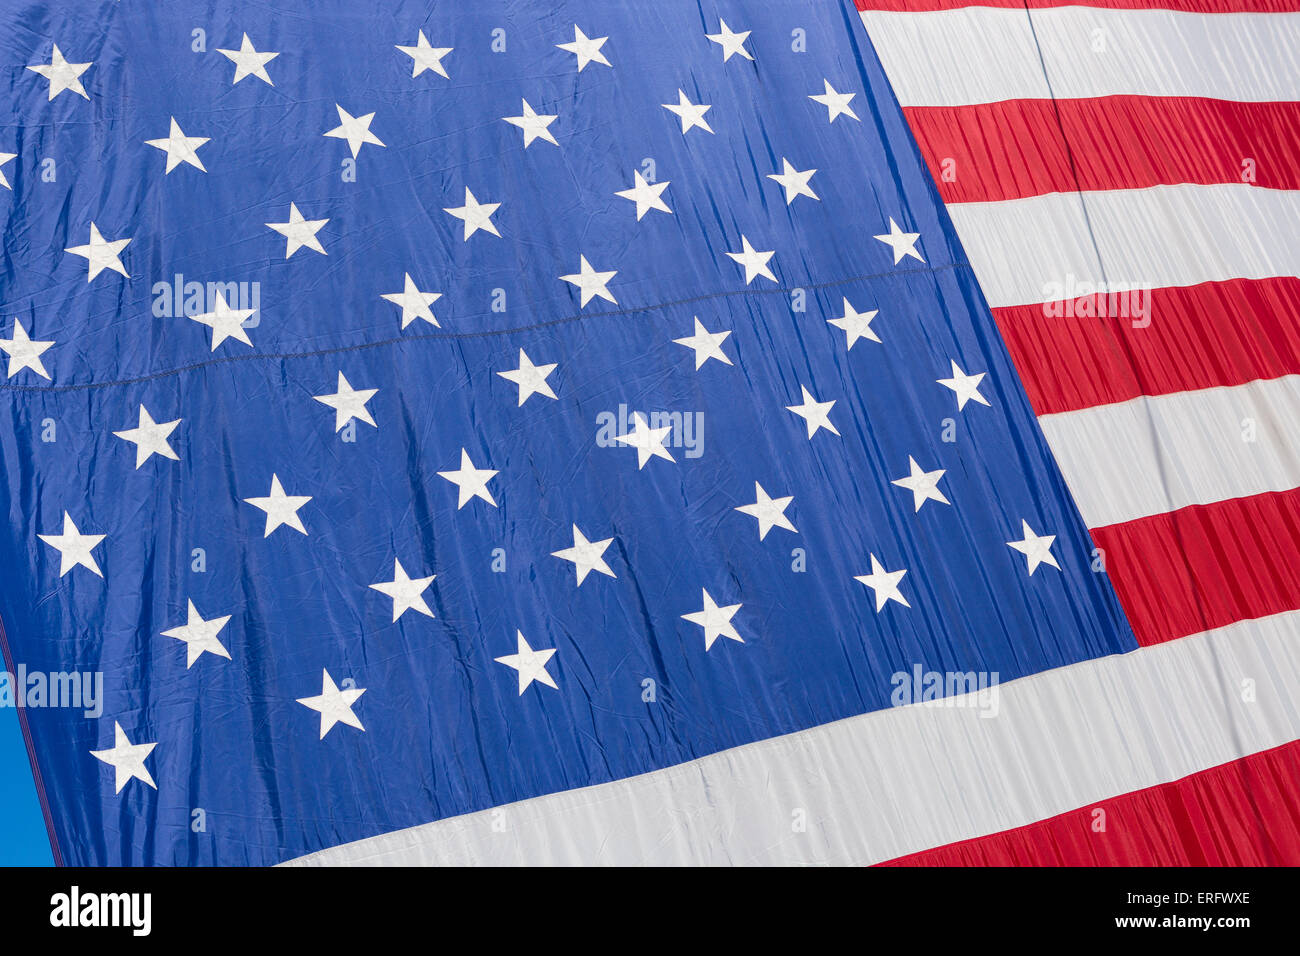 WASHINGTON, DC, USA - American flag on display. Stock Photo